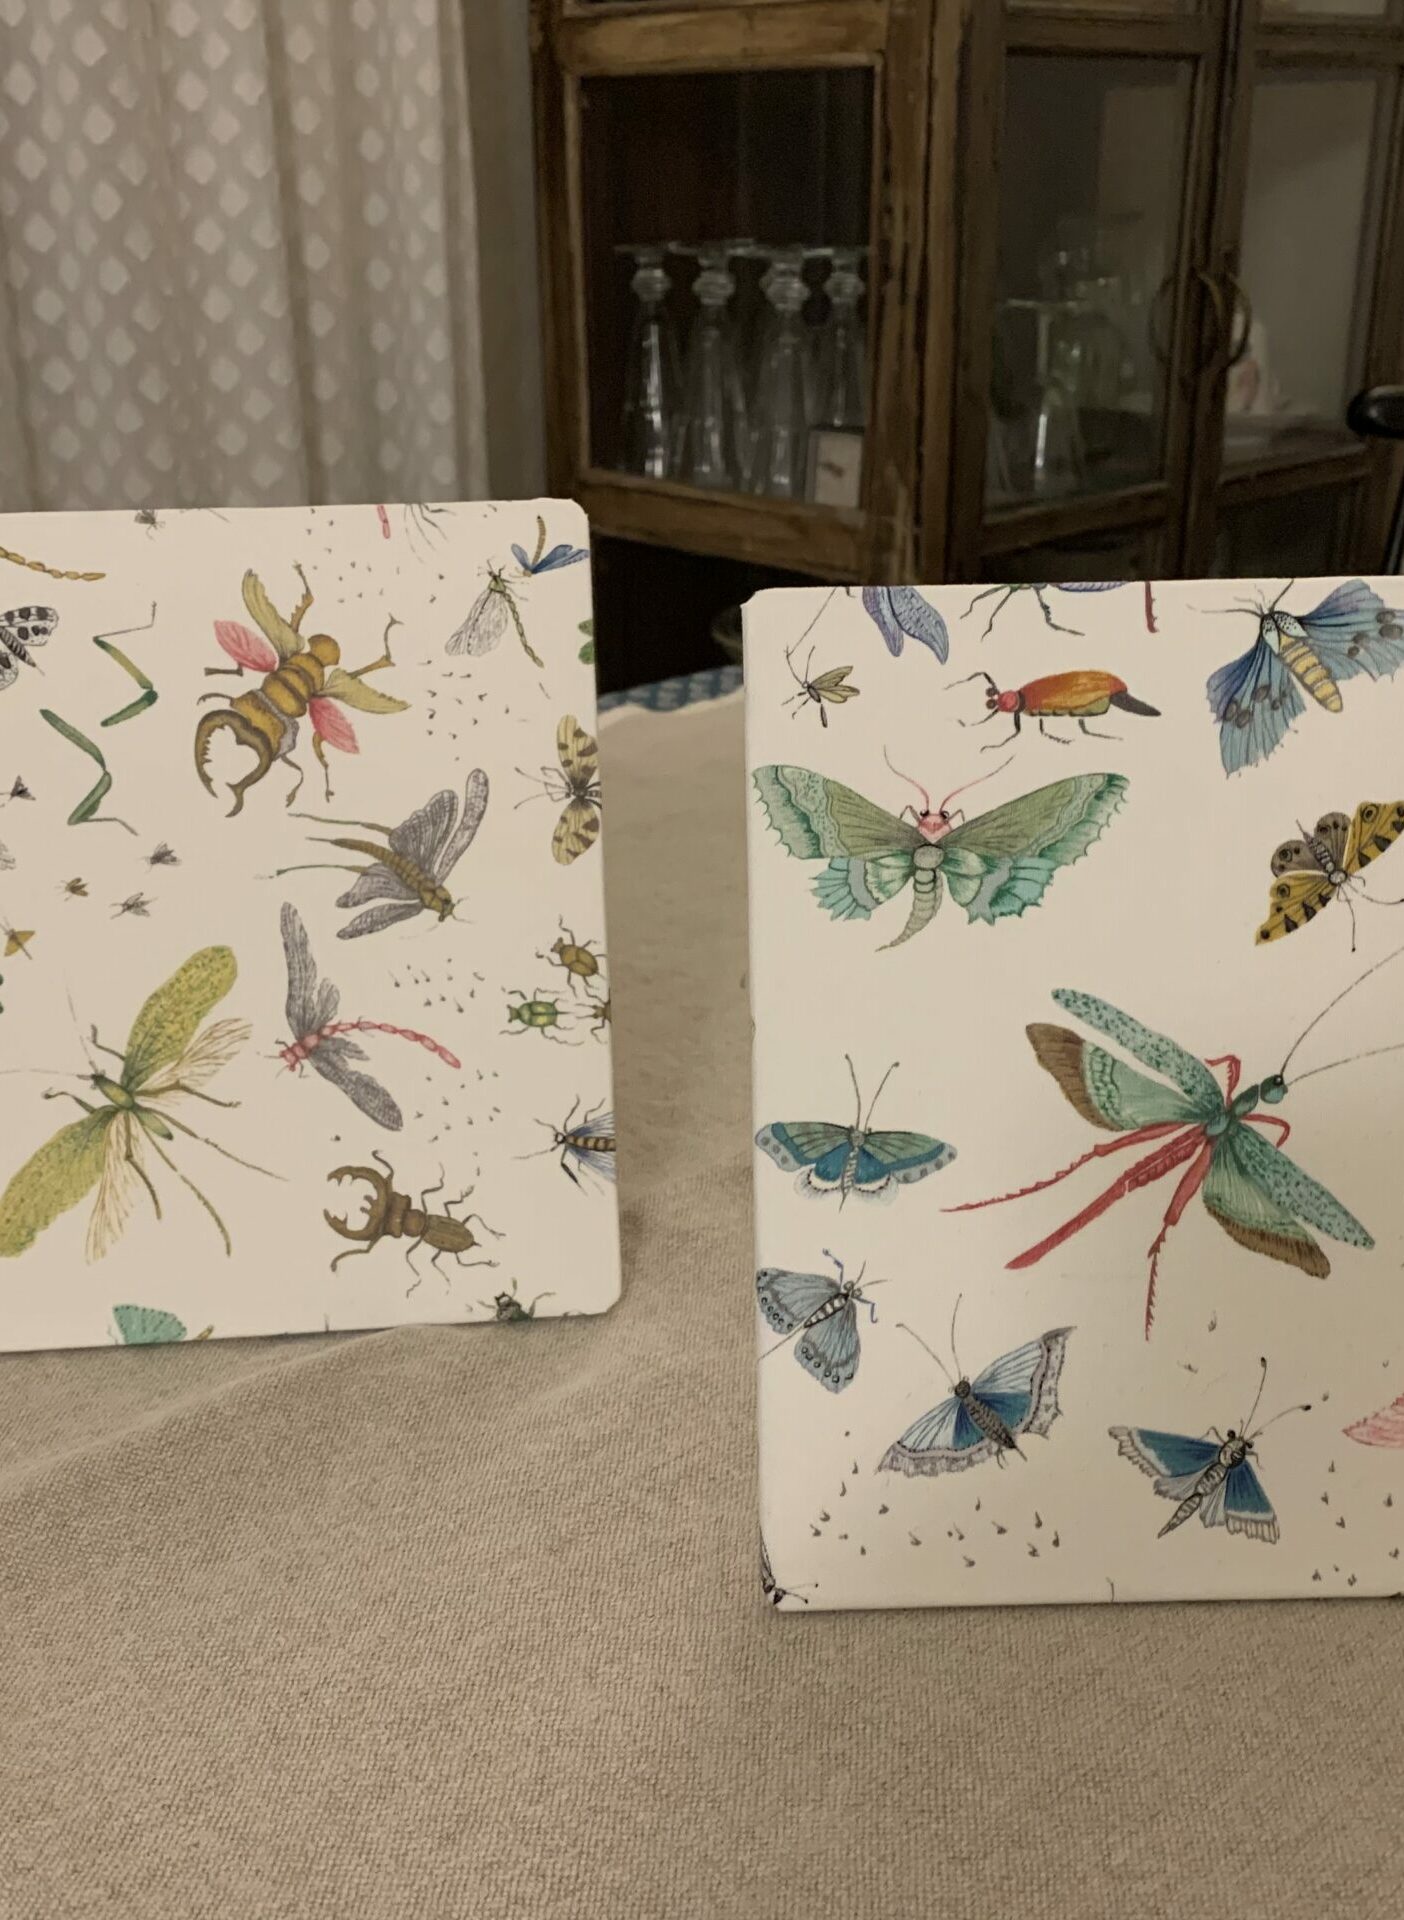 2 abat-jour écrans de 18 cm x 18 cm réalisés par Sara Marquet, représentant des insectes et papillons colorés